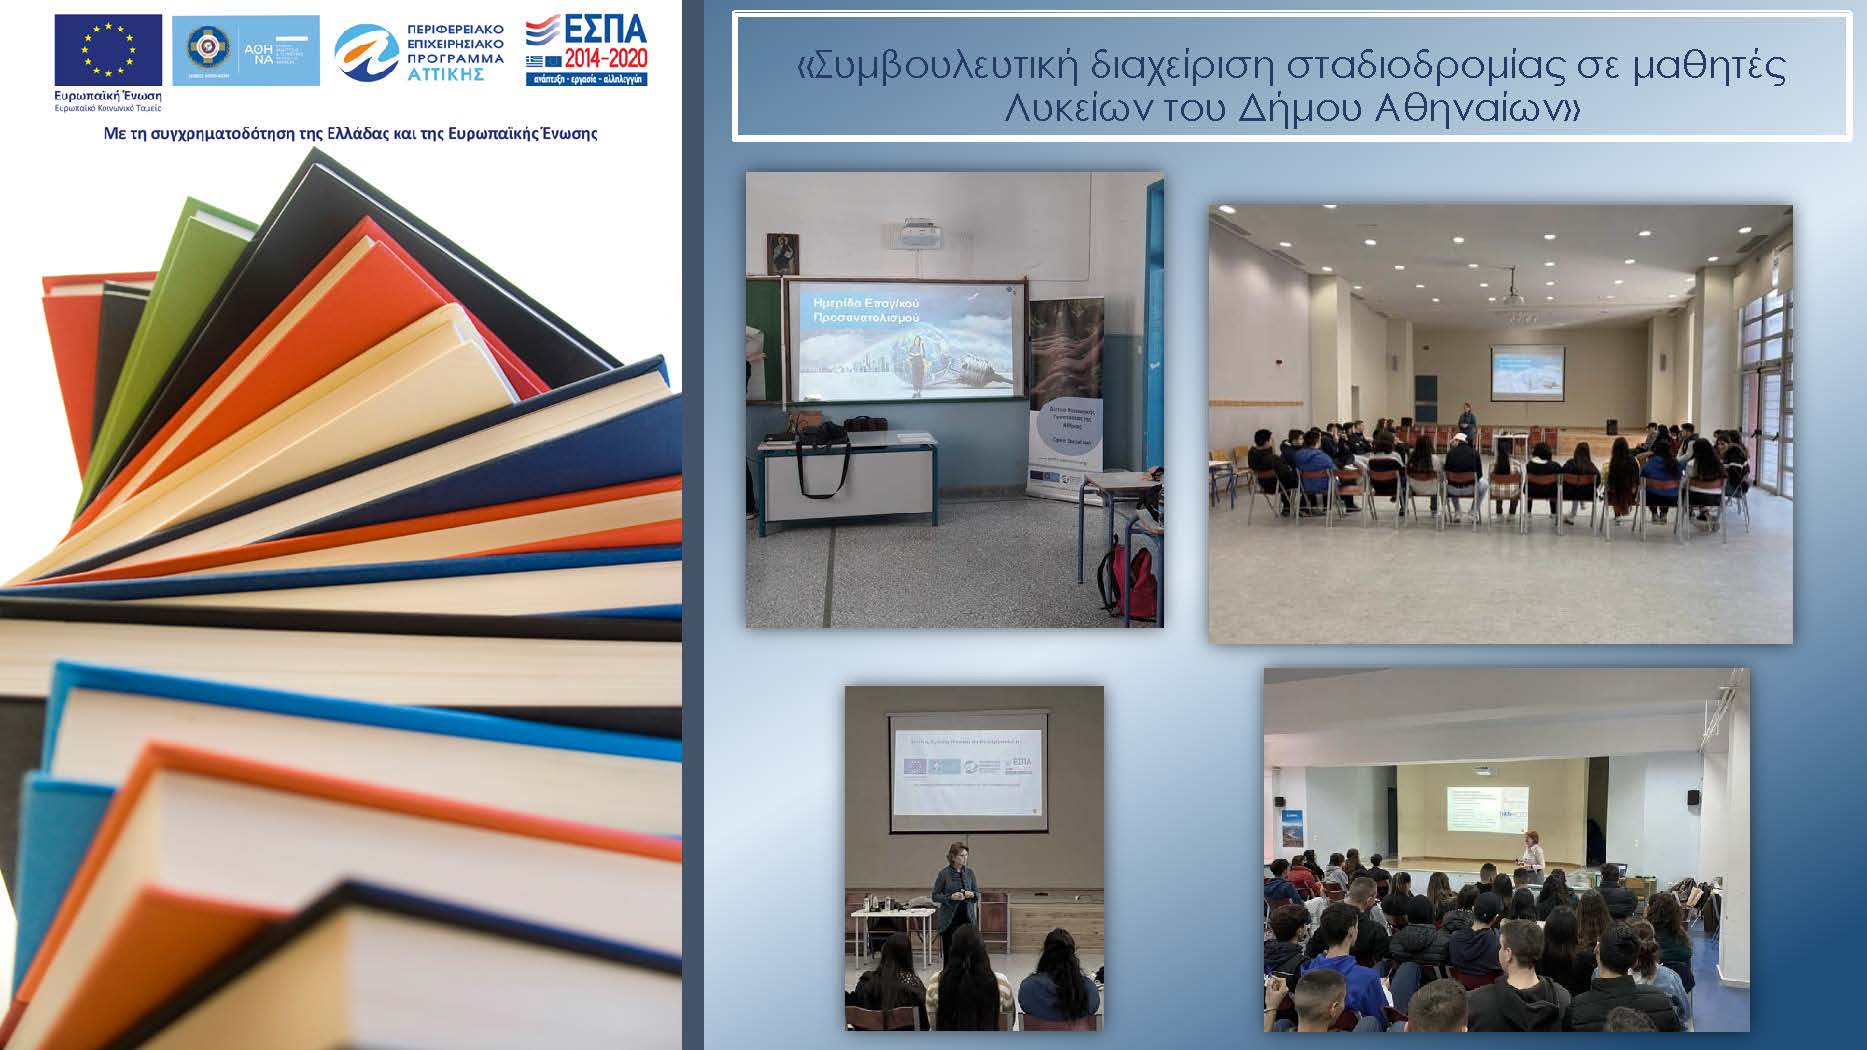 «Παροχή υπηρεσιών συμβουλευτικής διαχείρισης σταδιοδρομίας σε μαθητές Λυκείων του Δήμου Αθηναίων» Ολοκλήρωση δράσης!